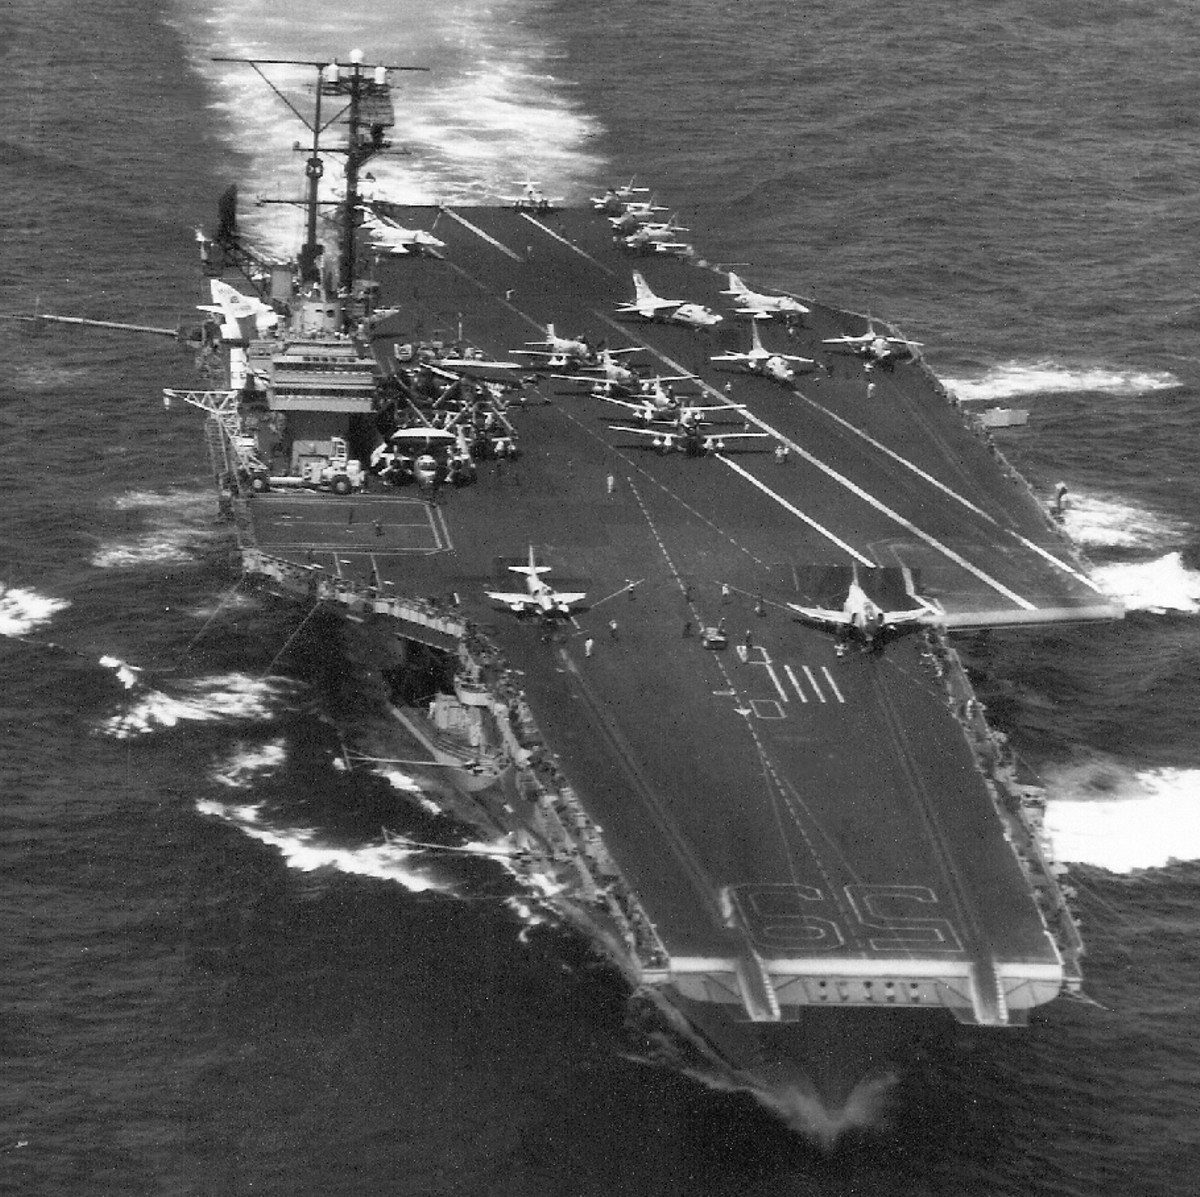 cv-59 uss forrestal aircraft carrier air wing cvw-8 us navy 47